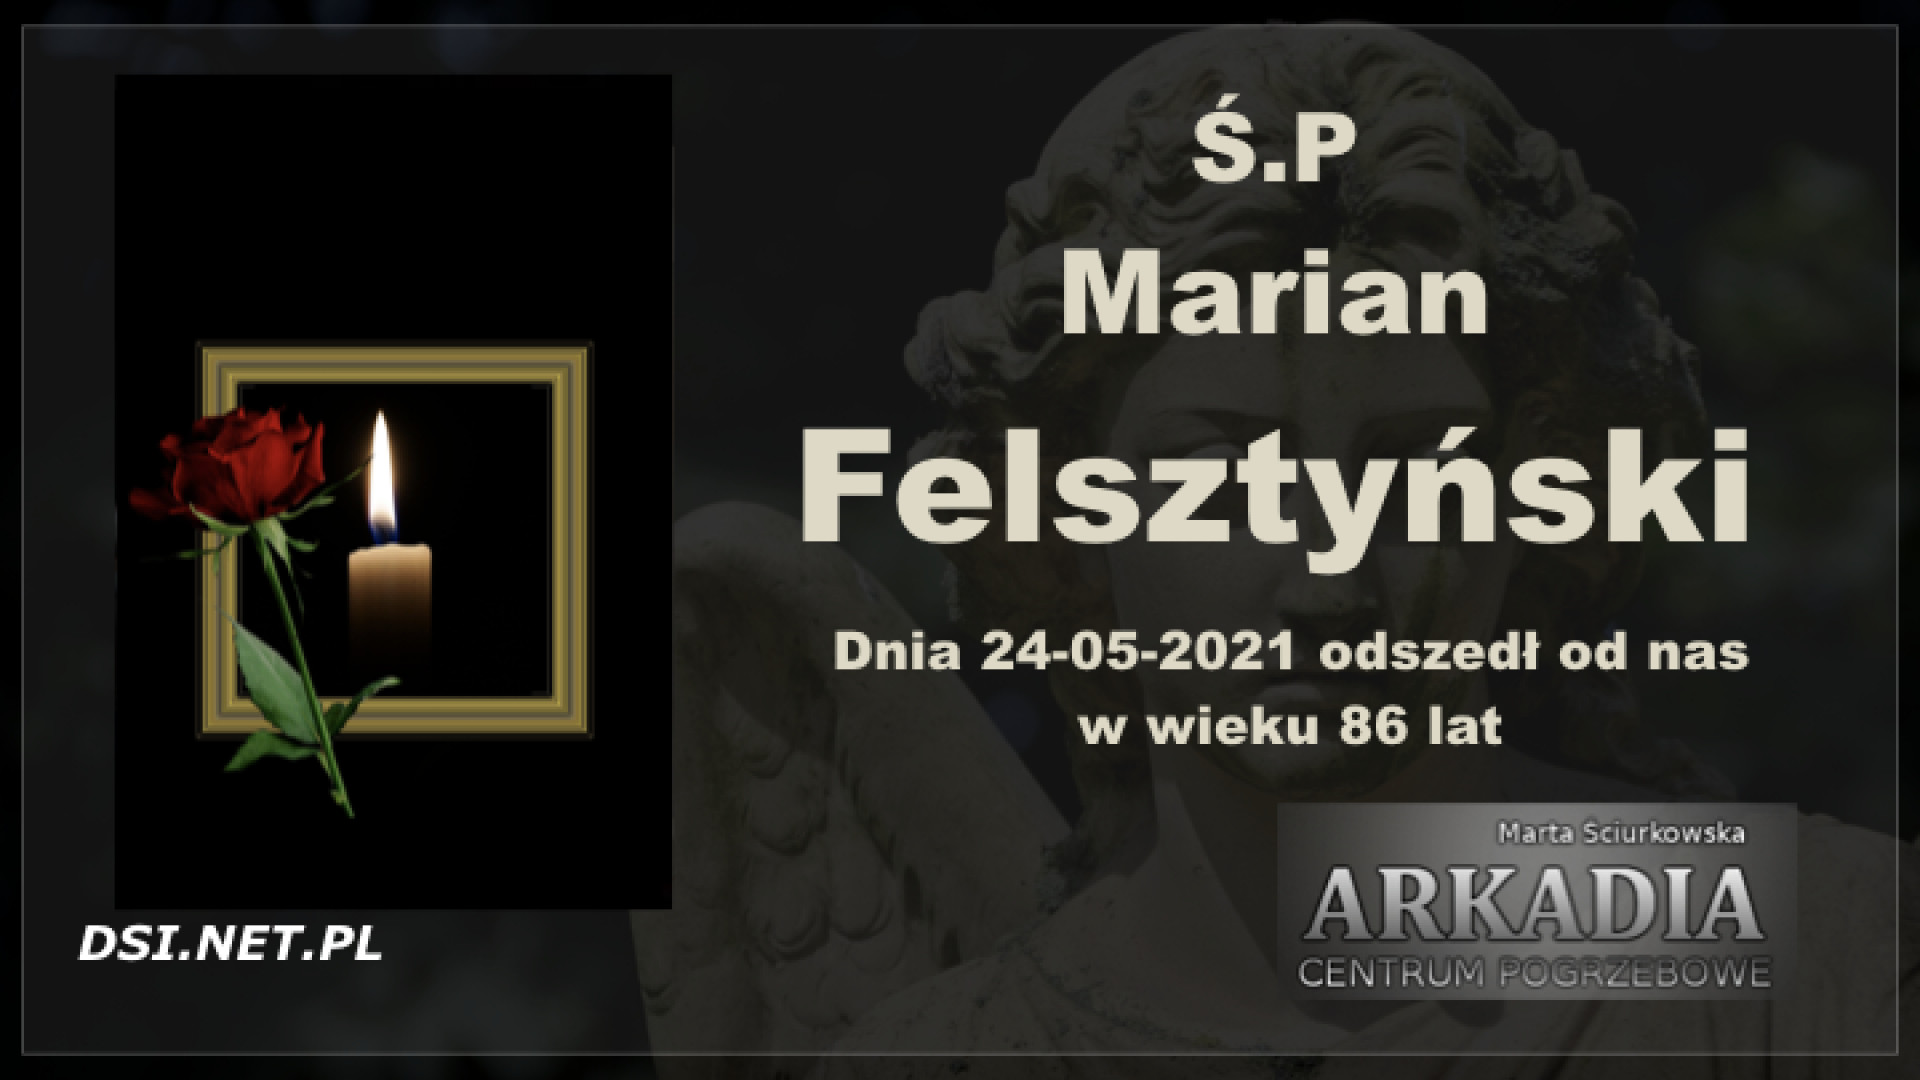 Ś.P. Marian Felsztyński